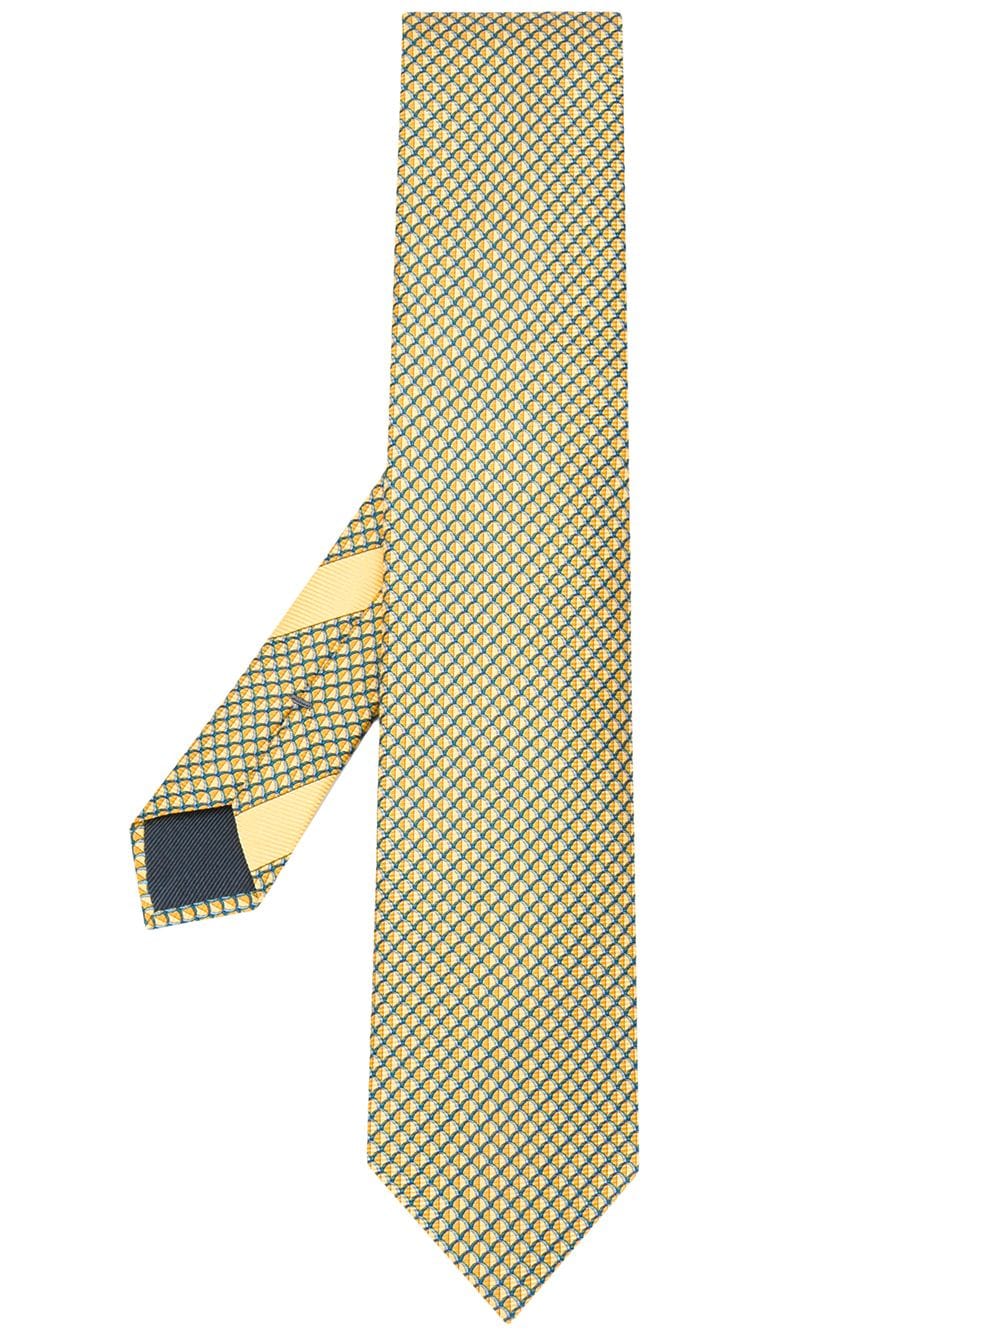 фото Ermenegildo zegna галстук с геометричным принтом